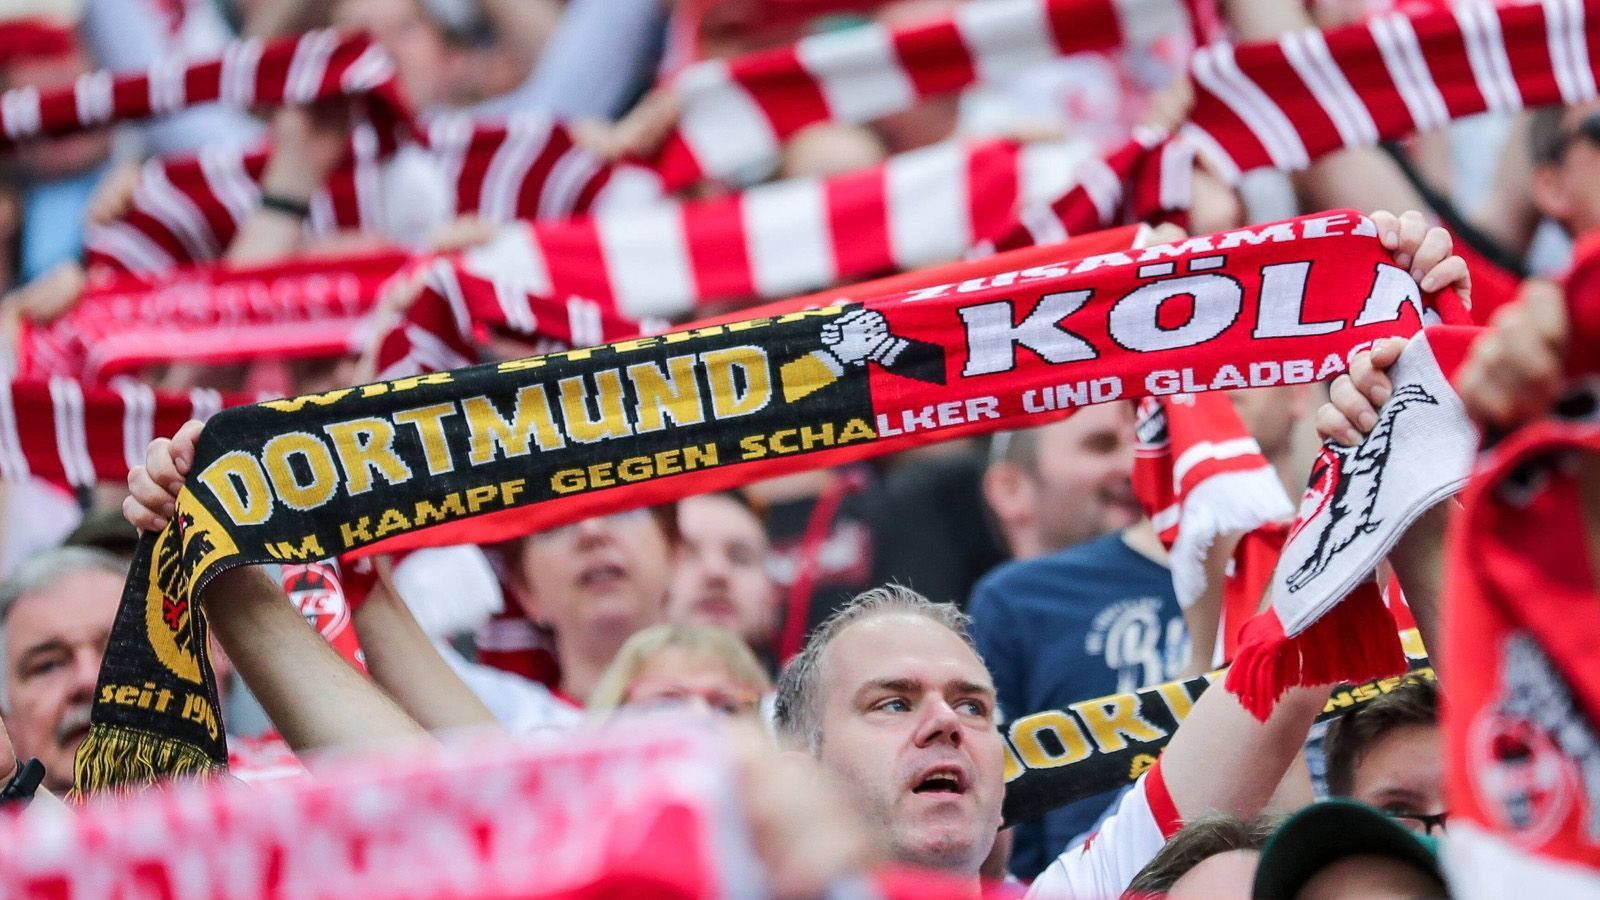 
                <strong>Umfrage-Ergebnis: Die beliebtesten Zweitvereine der Bundesliga</strong><br>
                Der Trend geht zum Zweitverein. Laut einer repräsentativen Umfrage der Wiesbadener Sportmarktforschungs-Agentur "One8Y" haben 47 Prozent der Fußball-Fans neben ihrem eigentlichen Herzensverein einen zweiten Lieblingsclub. ran verrät, welche Vereine die beliebtesten Zweitvereine der Bundesliga sind.
              